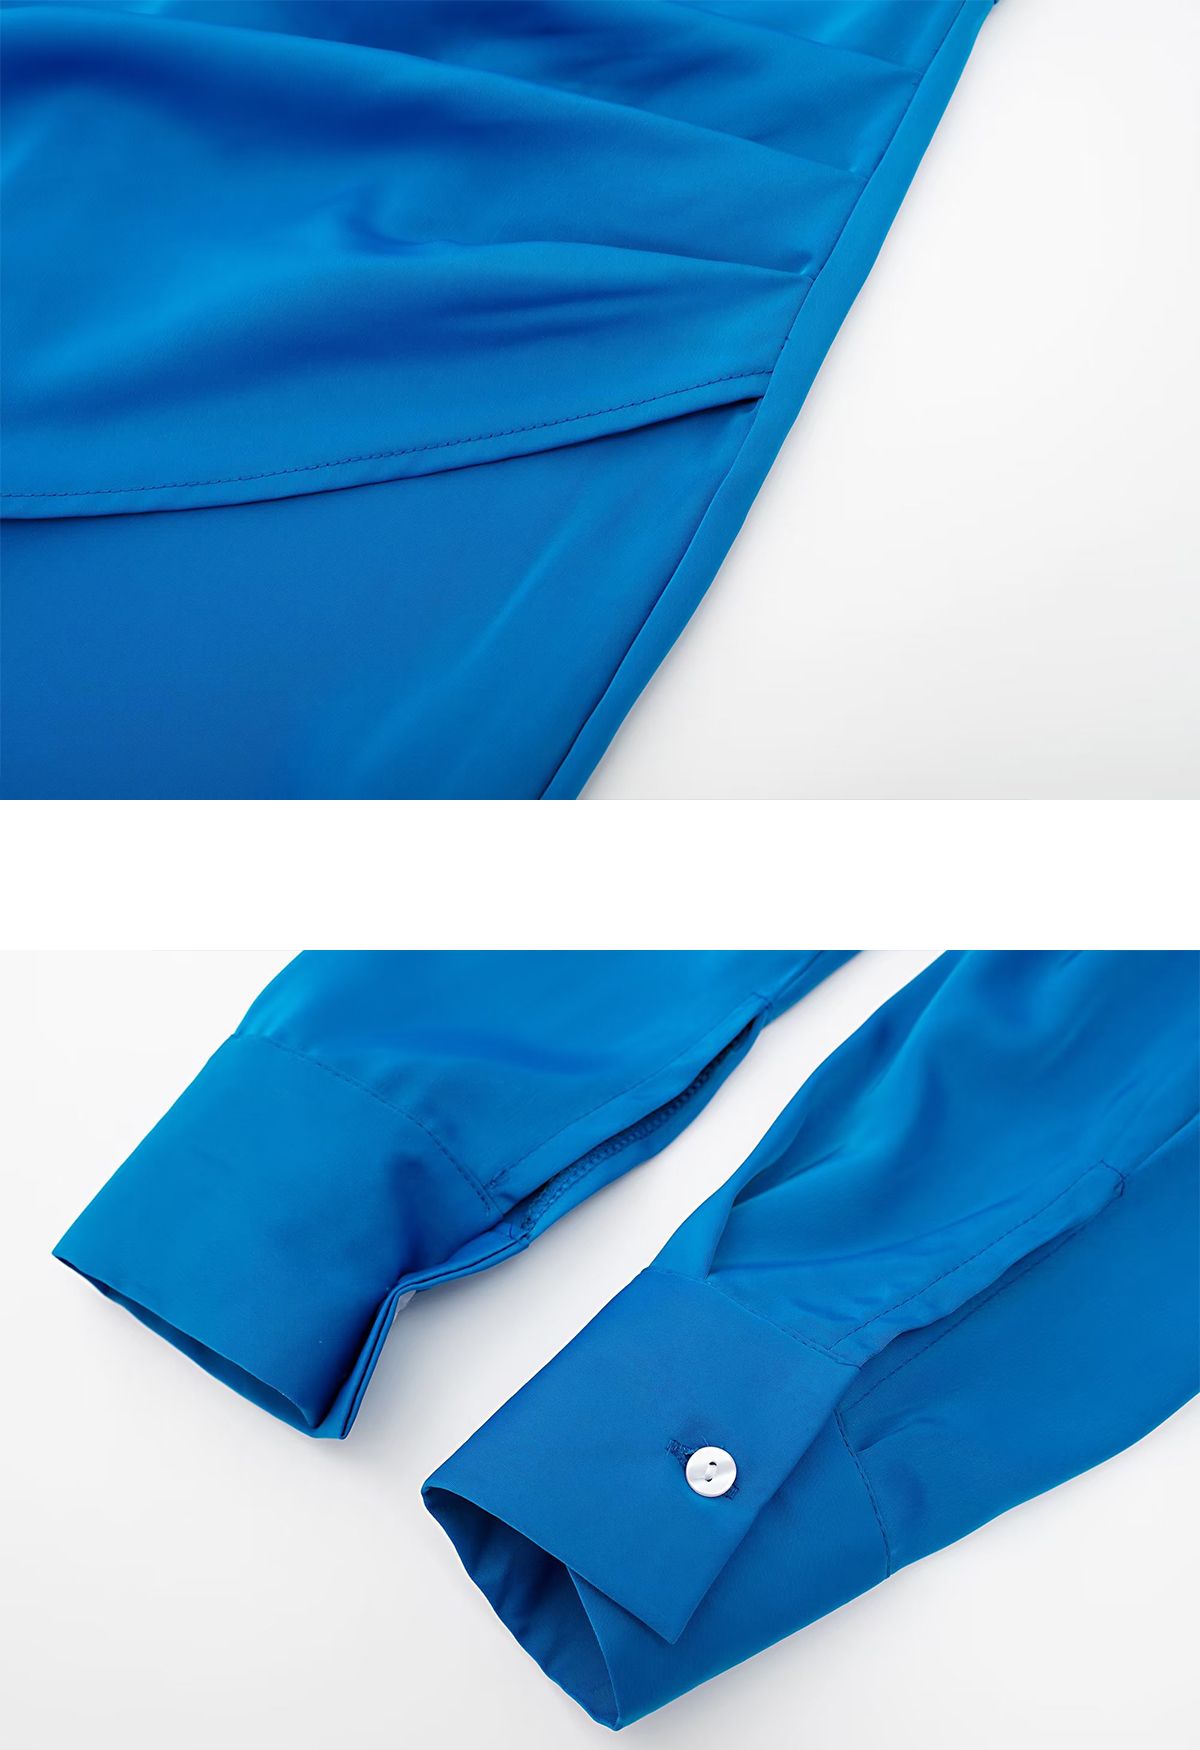 Vestido de camisa de cetim com decote em V franzido na frente em azul